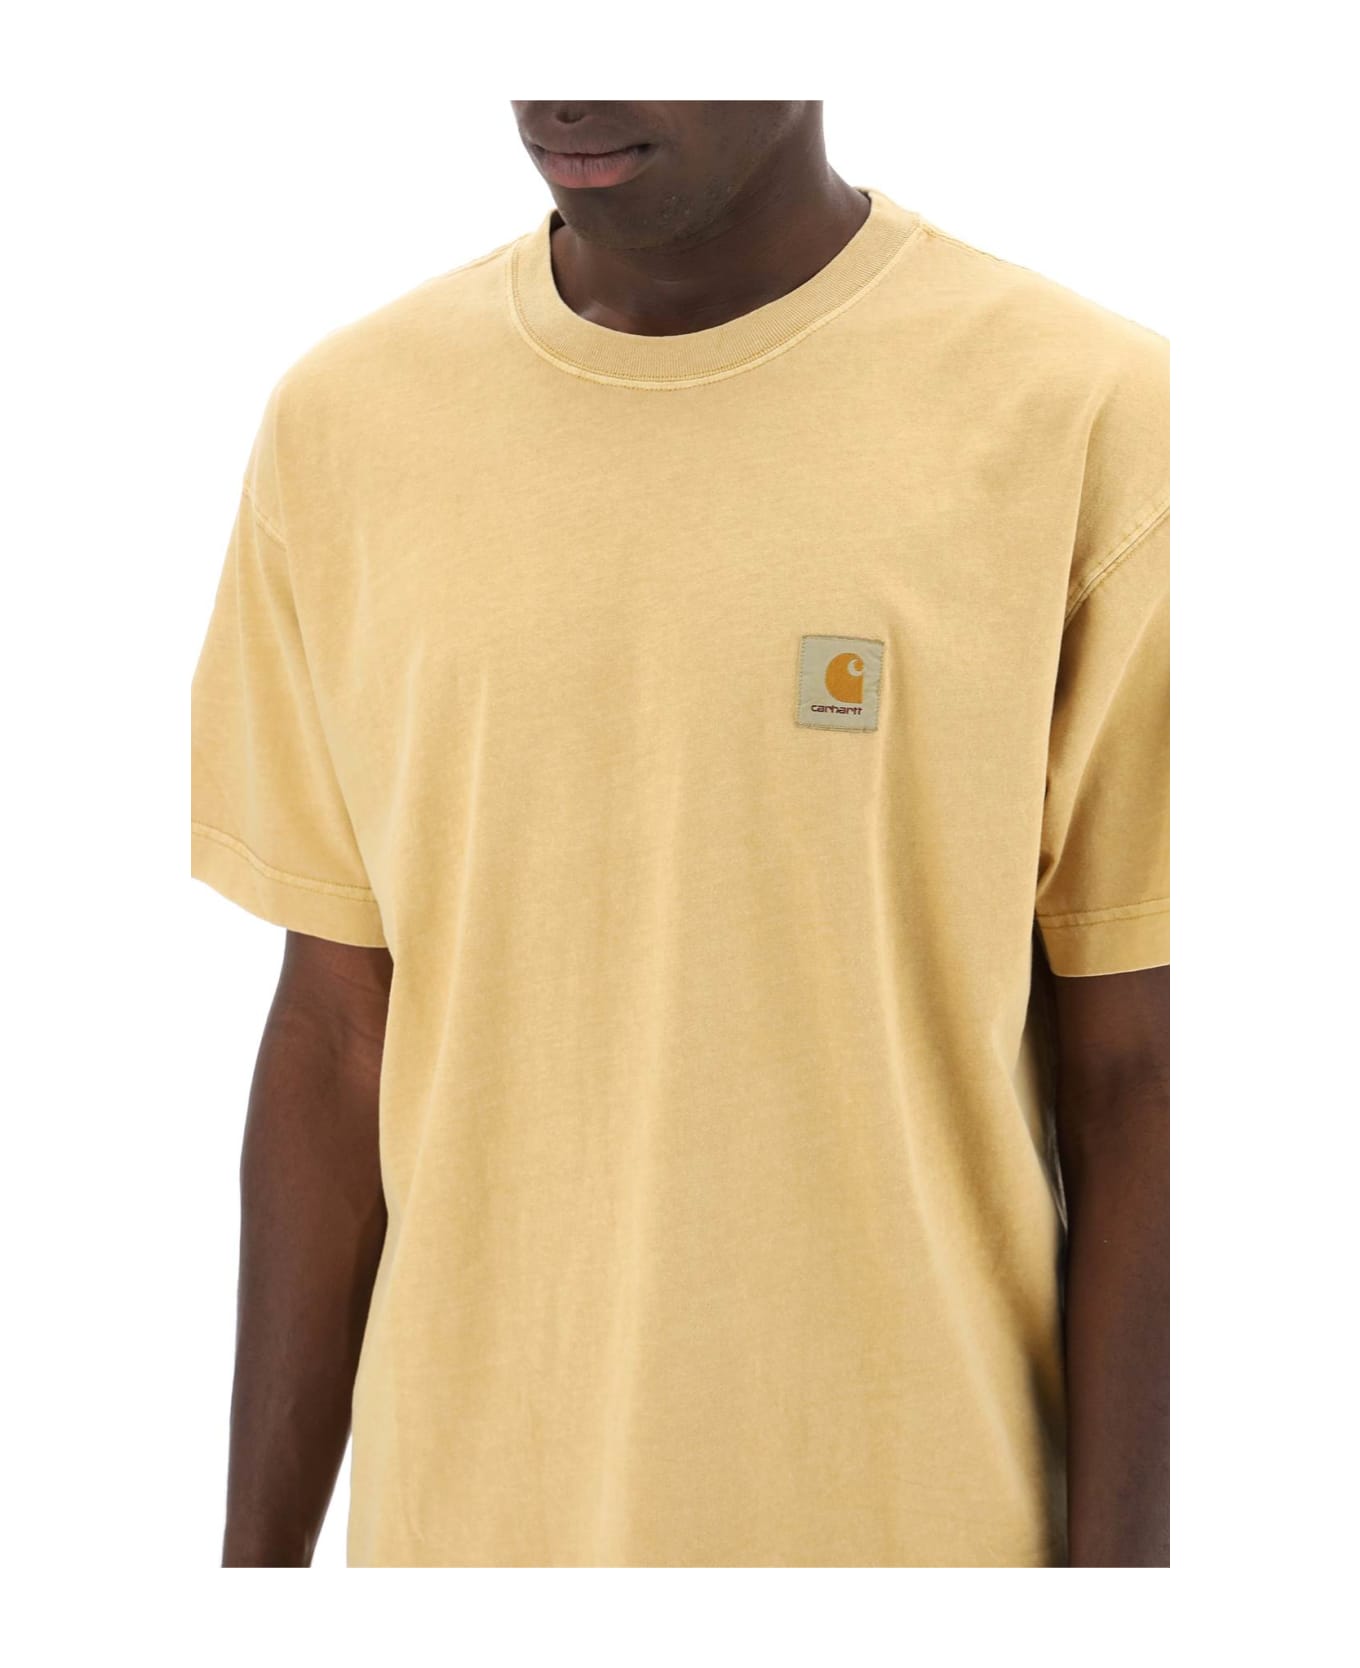 Carhartt Nelson T-shirt - Yhgd Bourbon Garment Dyed